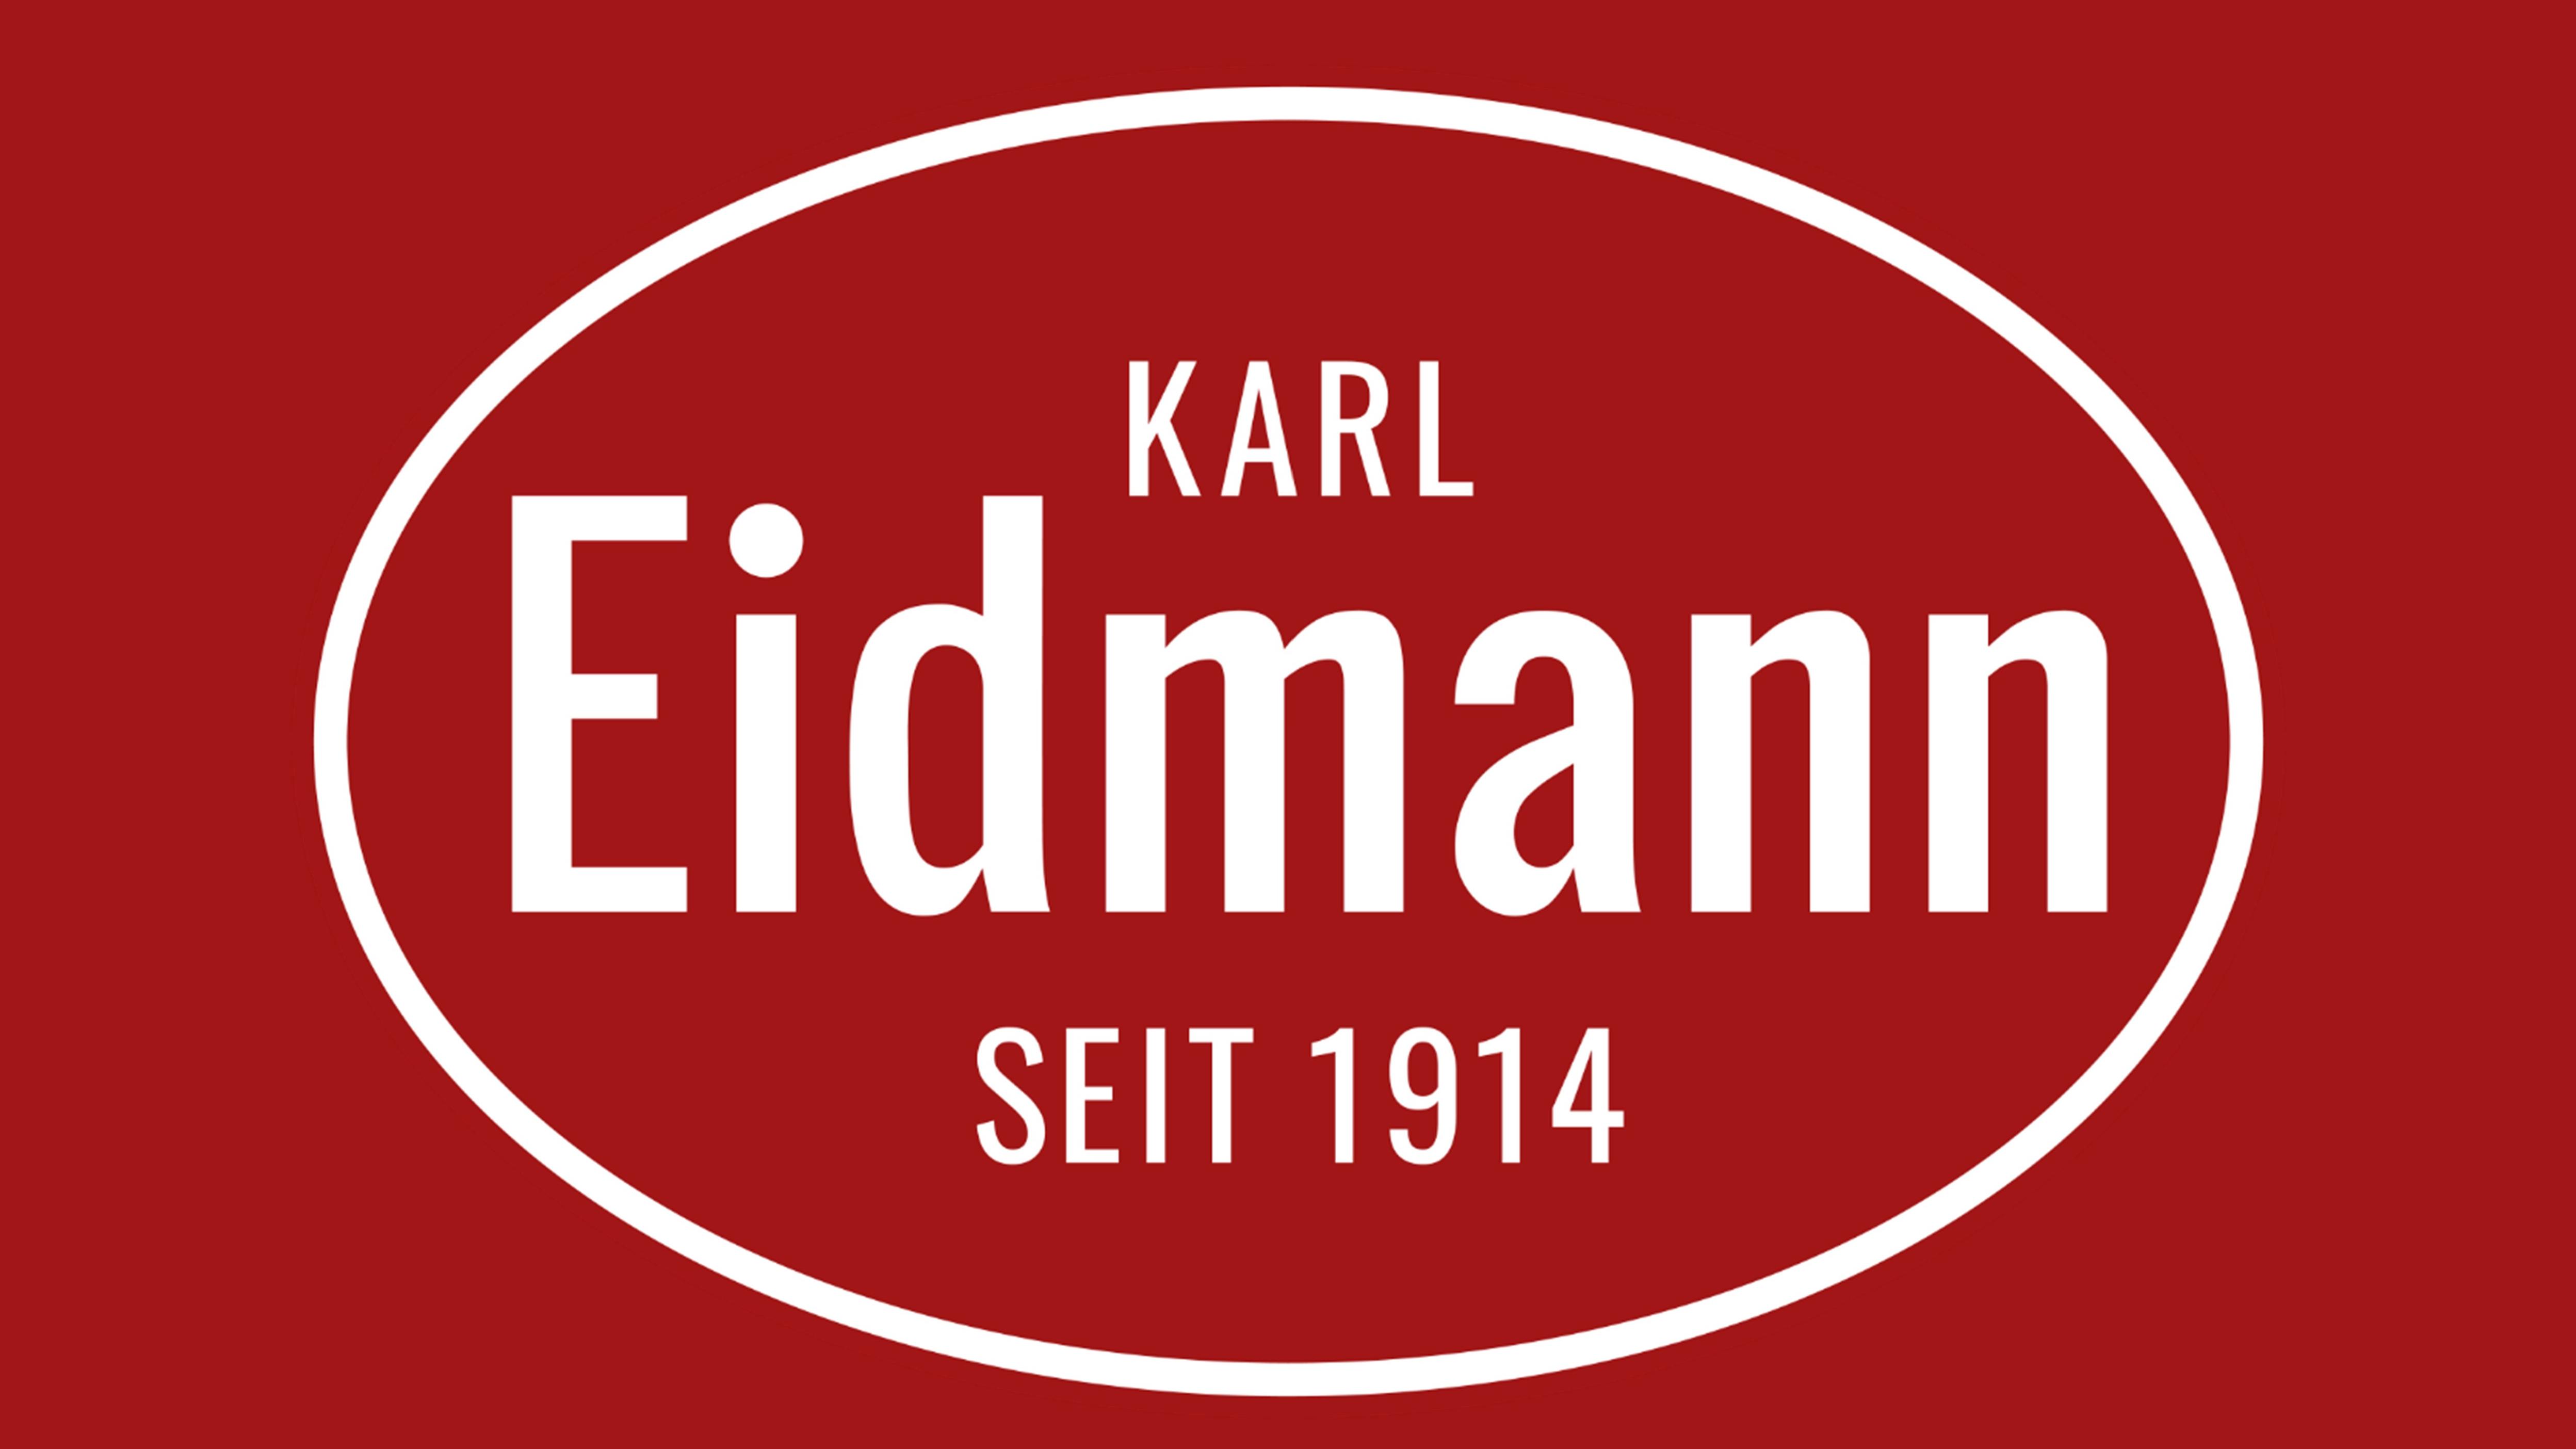 Karl Eidmann GmbH & Co. KG